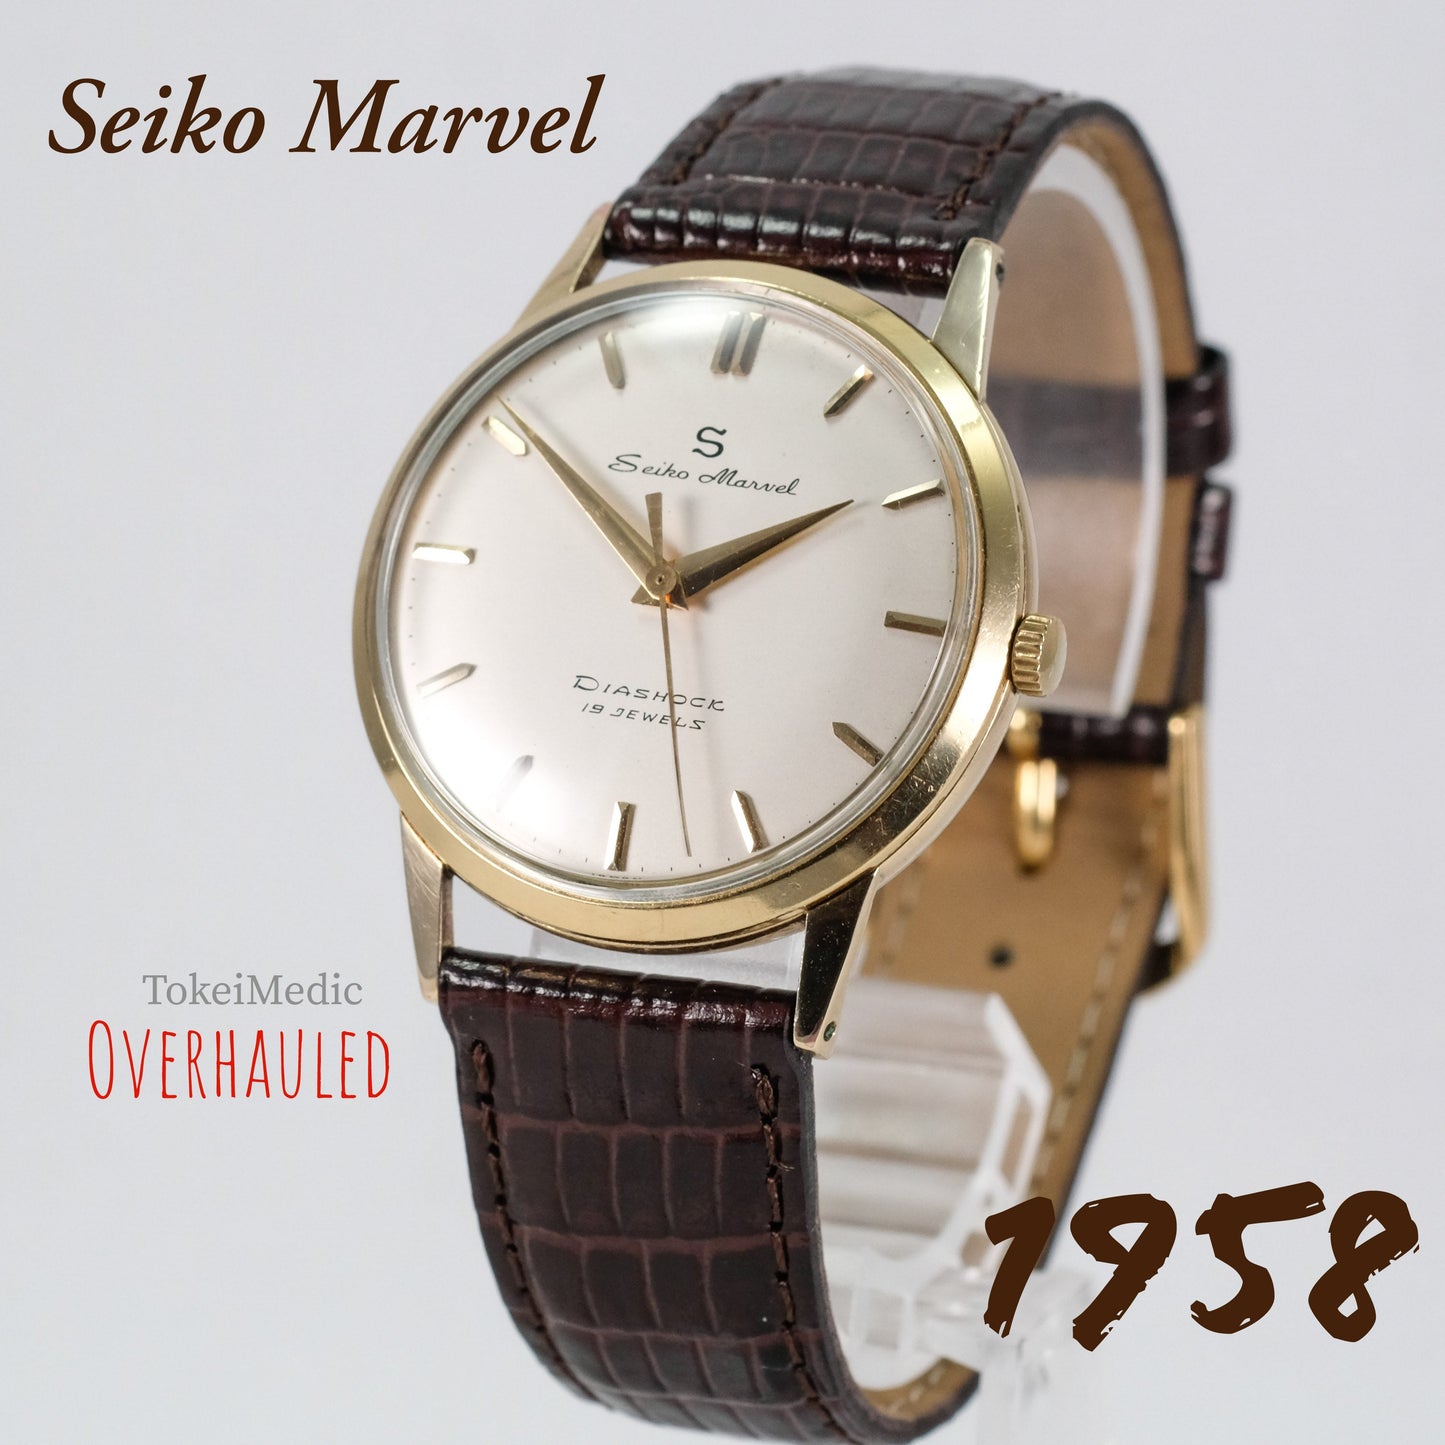 1958 Seiko Marvel 14045